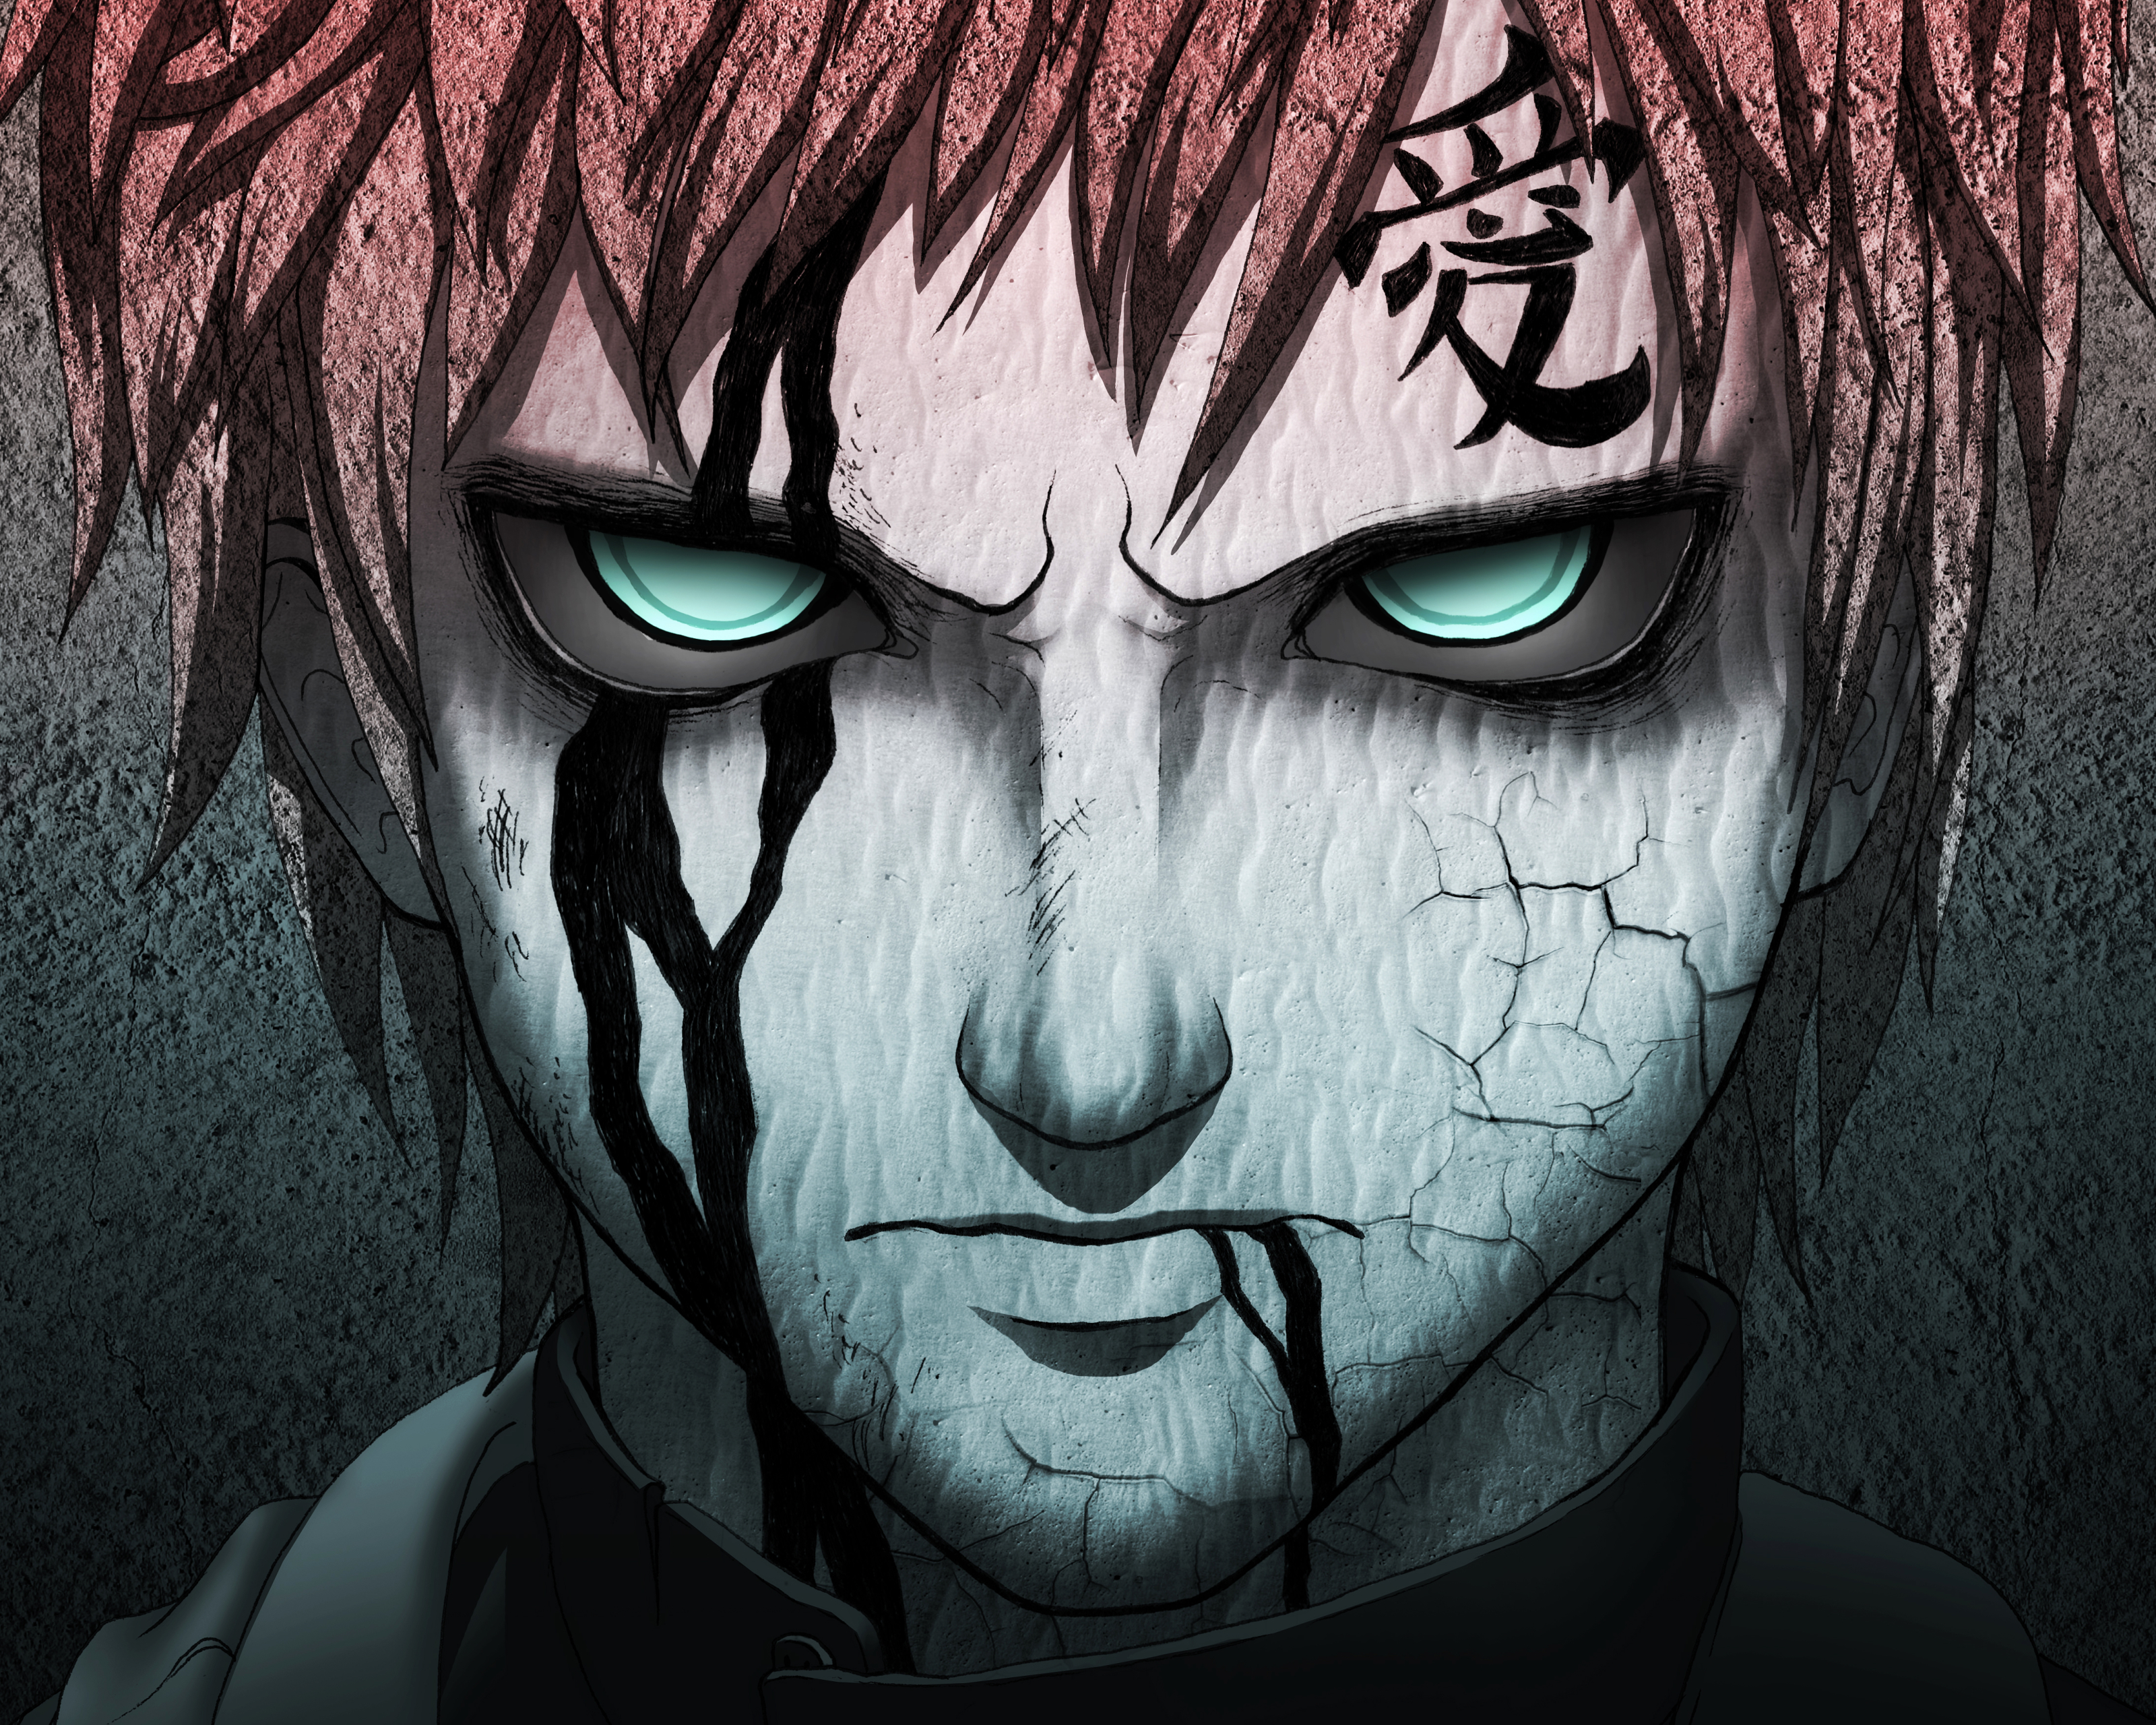 Descarga gratuita de fondo de pantalla para móvil de Naruto, Animado, Gaara (Naruto).